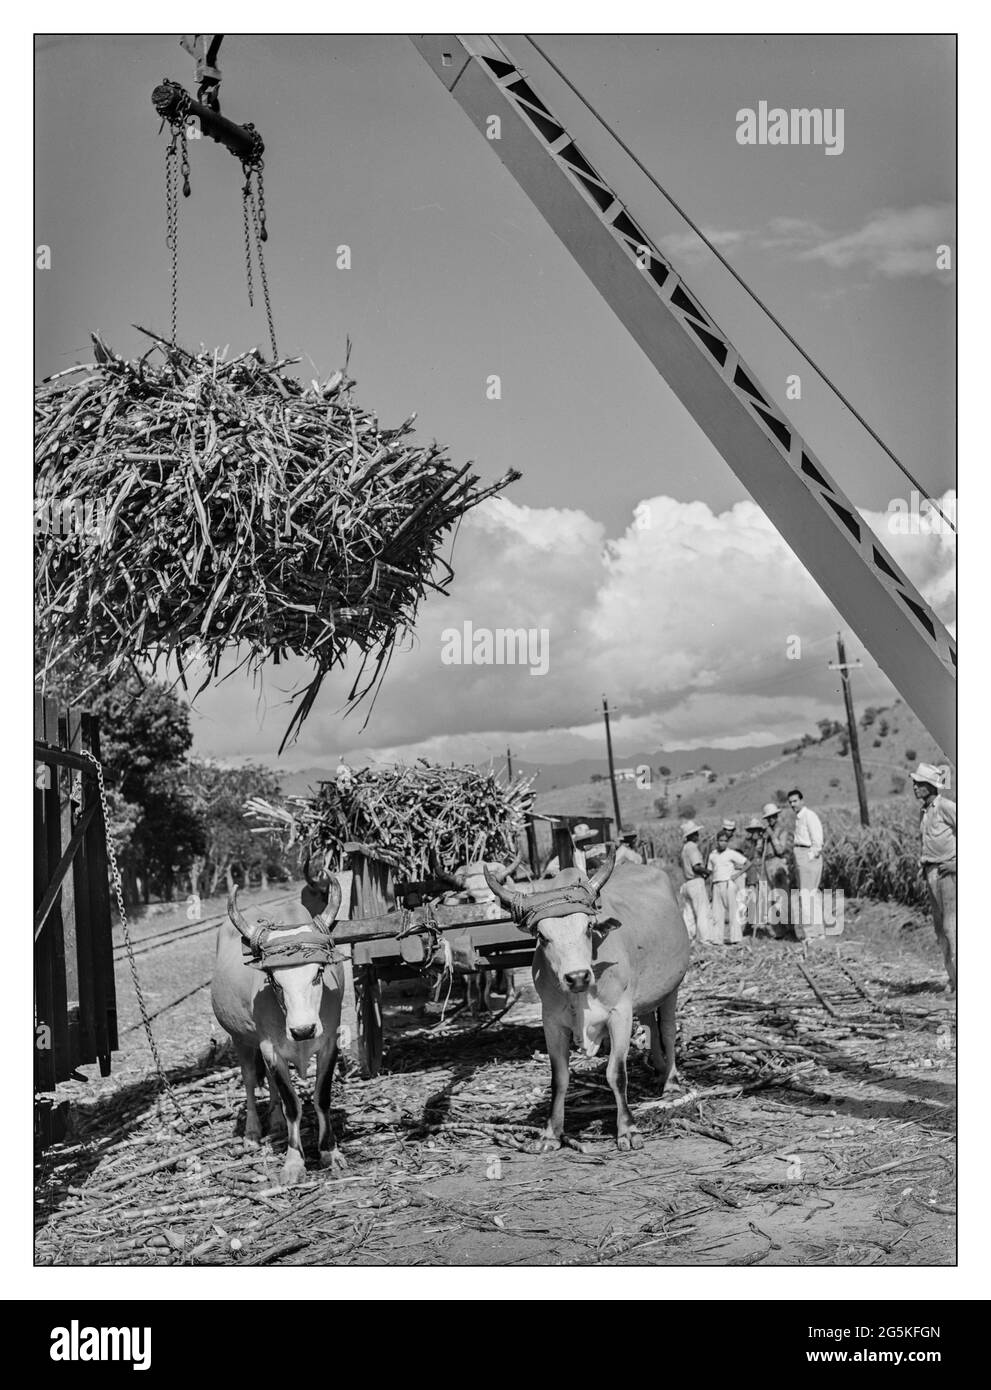 CANNE À SUCRE des années 1940 Guanica, Porto Rico. Chargement de canne à sucre du wagon de boeuf à la voiture de chemin de fer à être emmenée à la fabrique de sucre WW2 Food Supply ouvriers Jack Delano photographe 1942 janv. La Seconde Guerre mondiale Puerto Rico--Ponce Municipalité--Guanica Banque D'Images